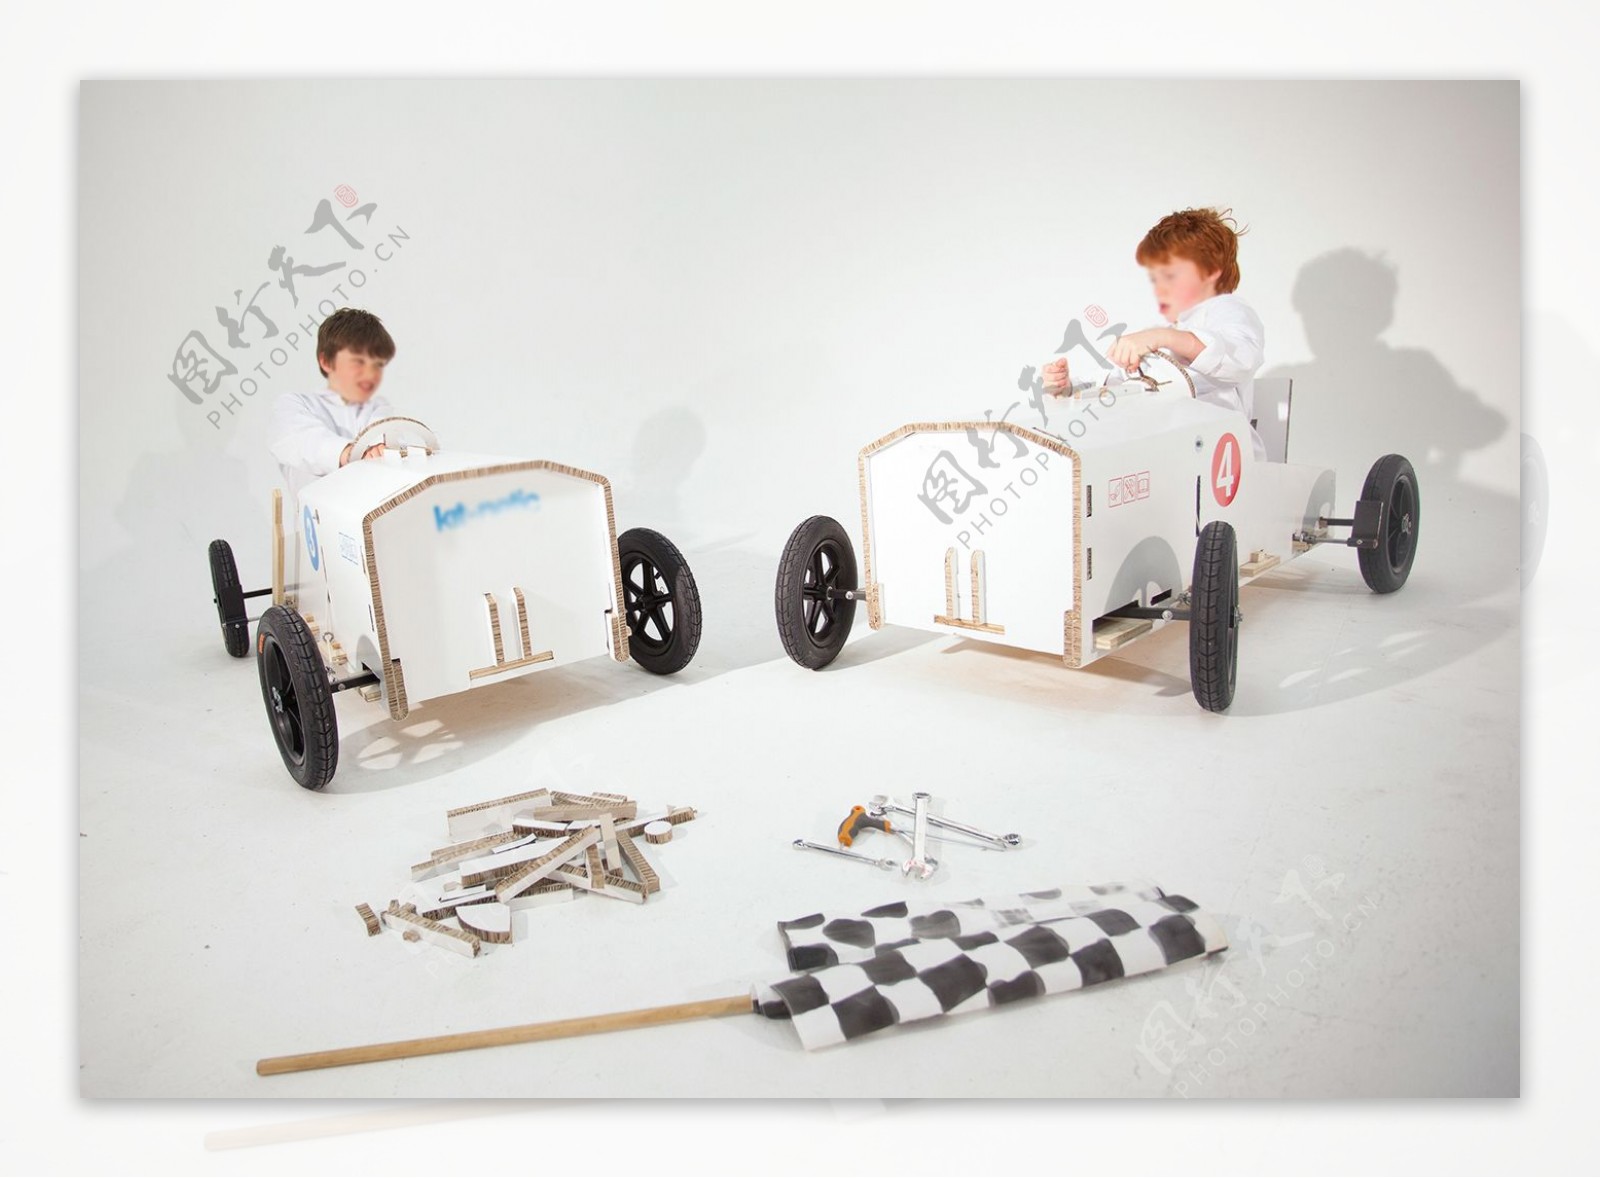 白色炫酷儿童环保设计的赛车jpg素材